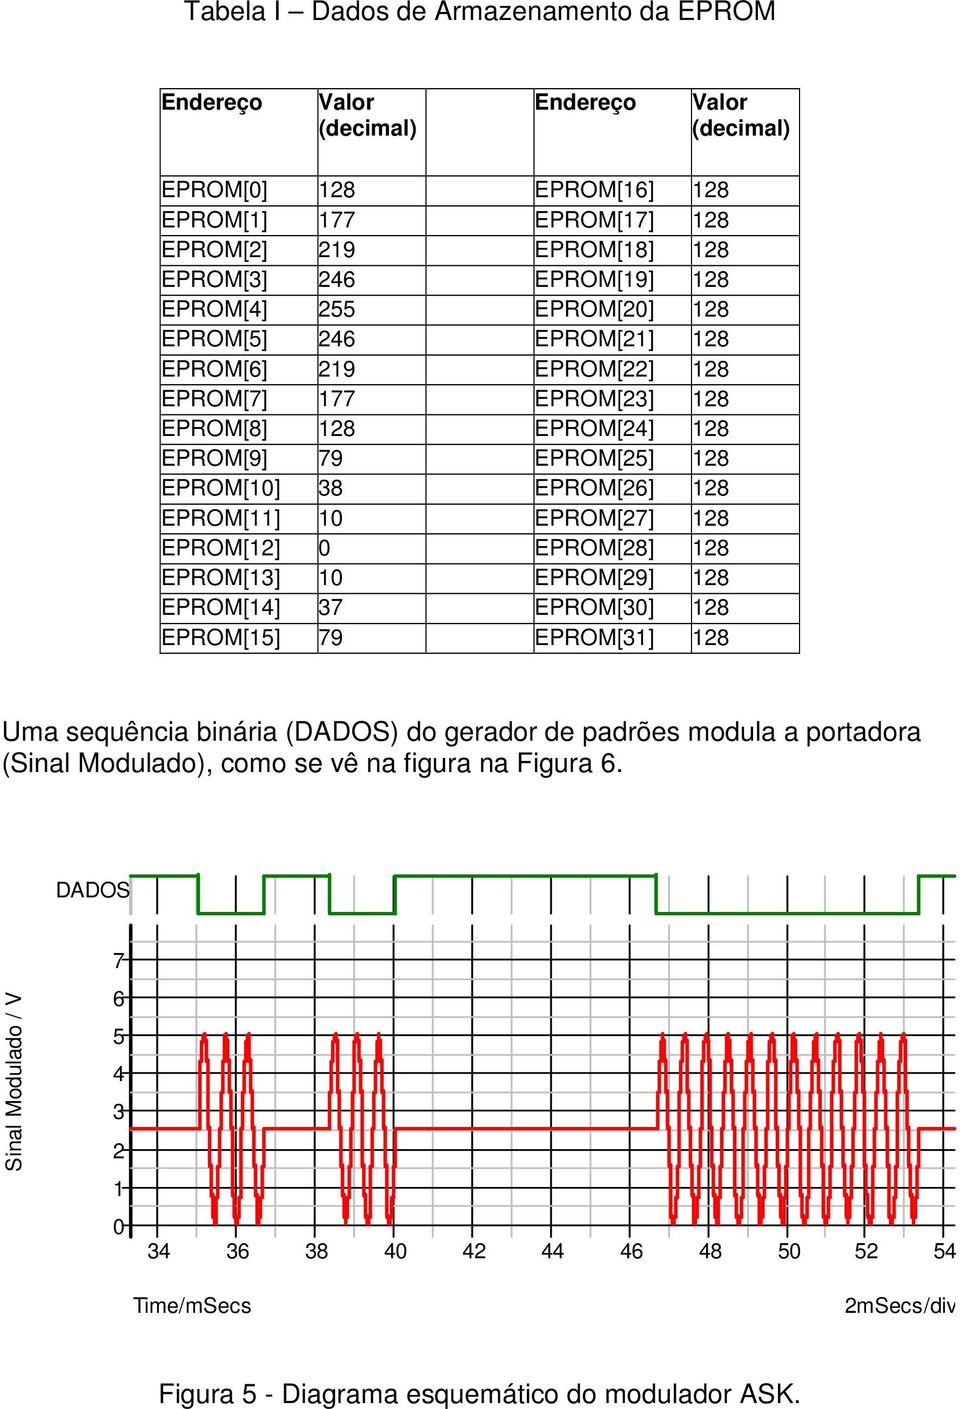 EPROM[27] 28 EPROM[2] 0 EPROM[28] 28 EPROM[3] 0 EPROM[29] 28 EPROM[4] 37 EPROM[30] 28 EPROM[5] 79 EPROM[3] 28 Uma sequência binária (DADOS) do gerador de padrões modula a portadora (Sinal